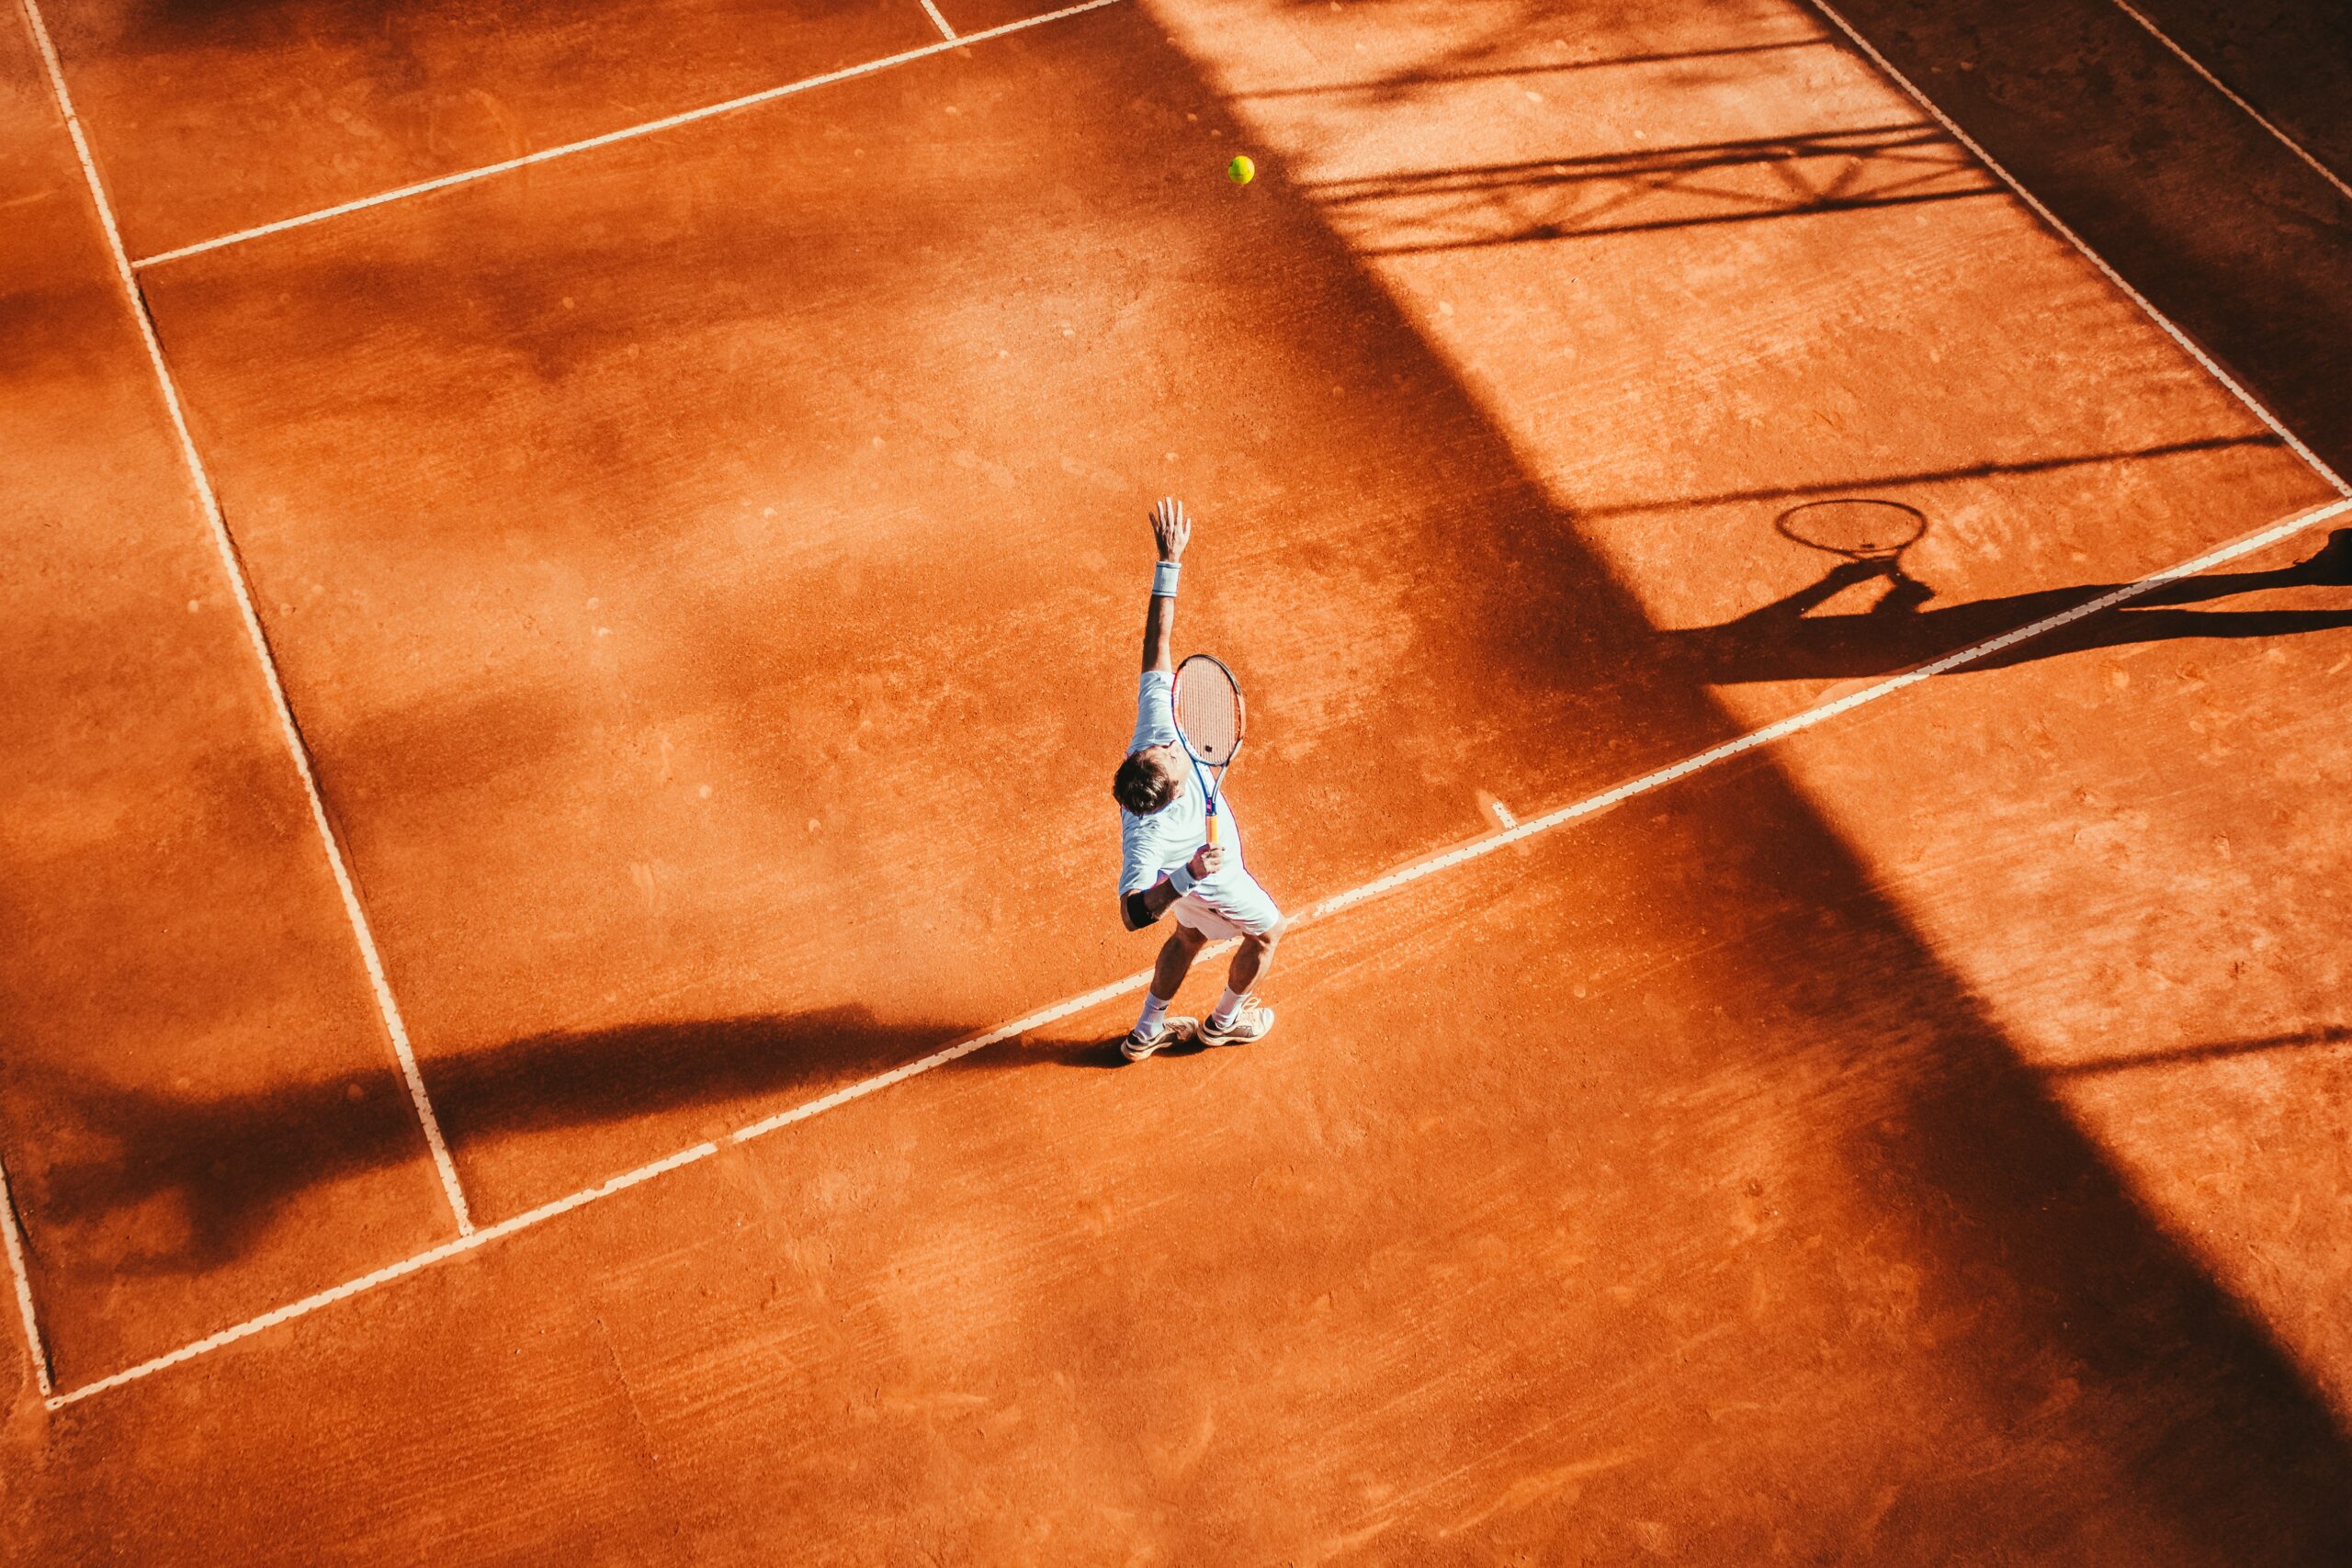 Bruine tennisbaan. Iemand op de tennisbaan serveert een tennisbal. Tennisracket is in de lucht. Tennisbaan in Ridderkerk.